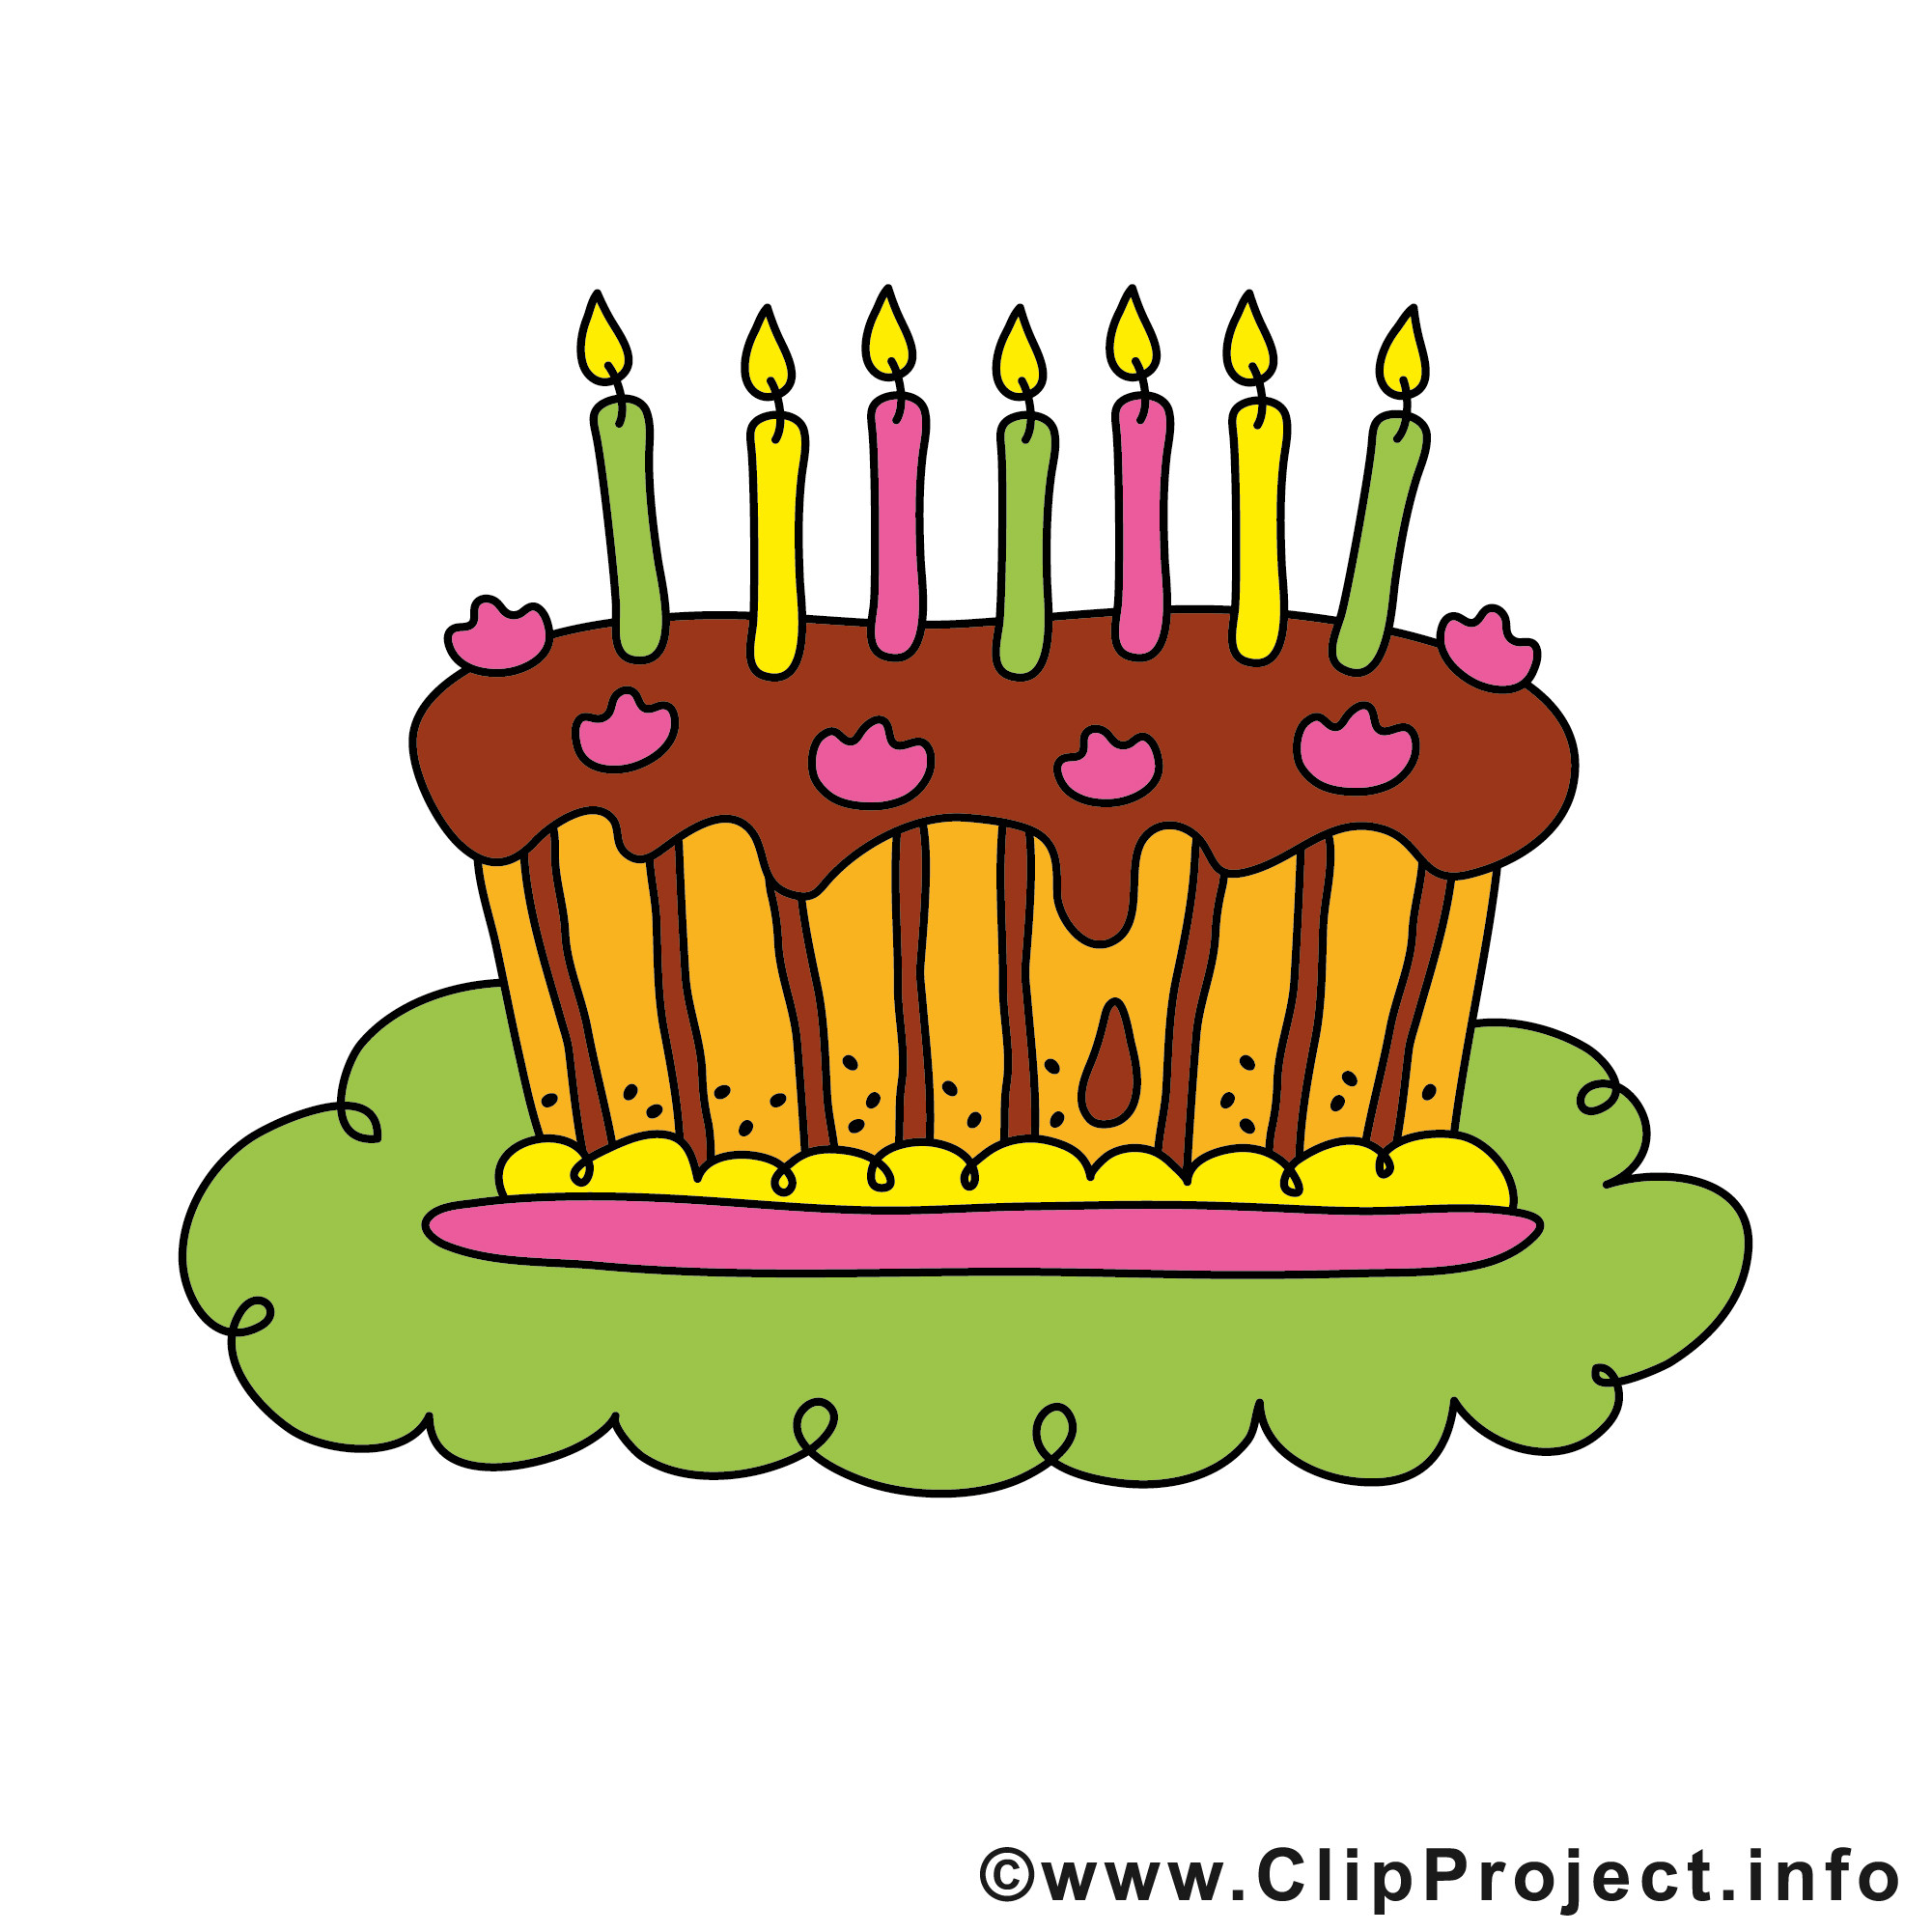 Geburtstagskuchen Clipart
 Einladung zum 40 Geburtstag mit Kuchen Clipart gestalten